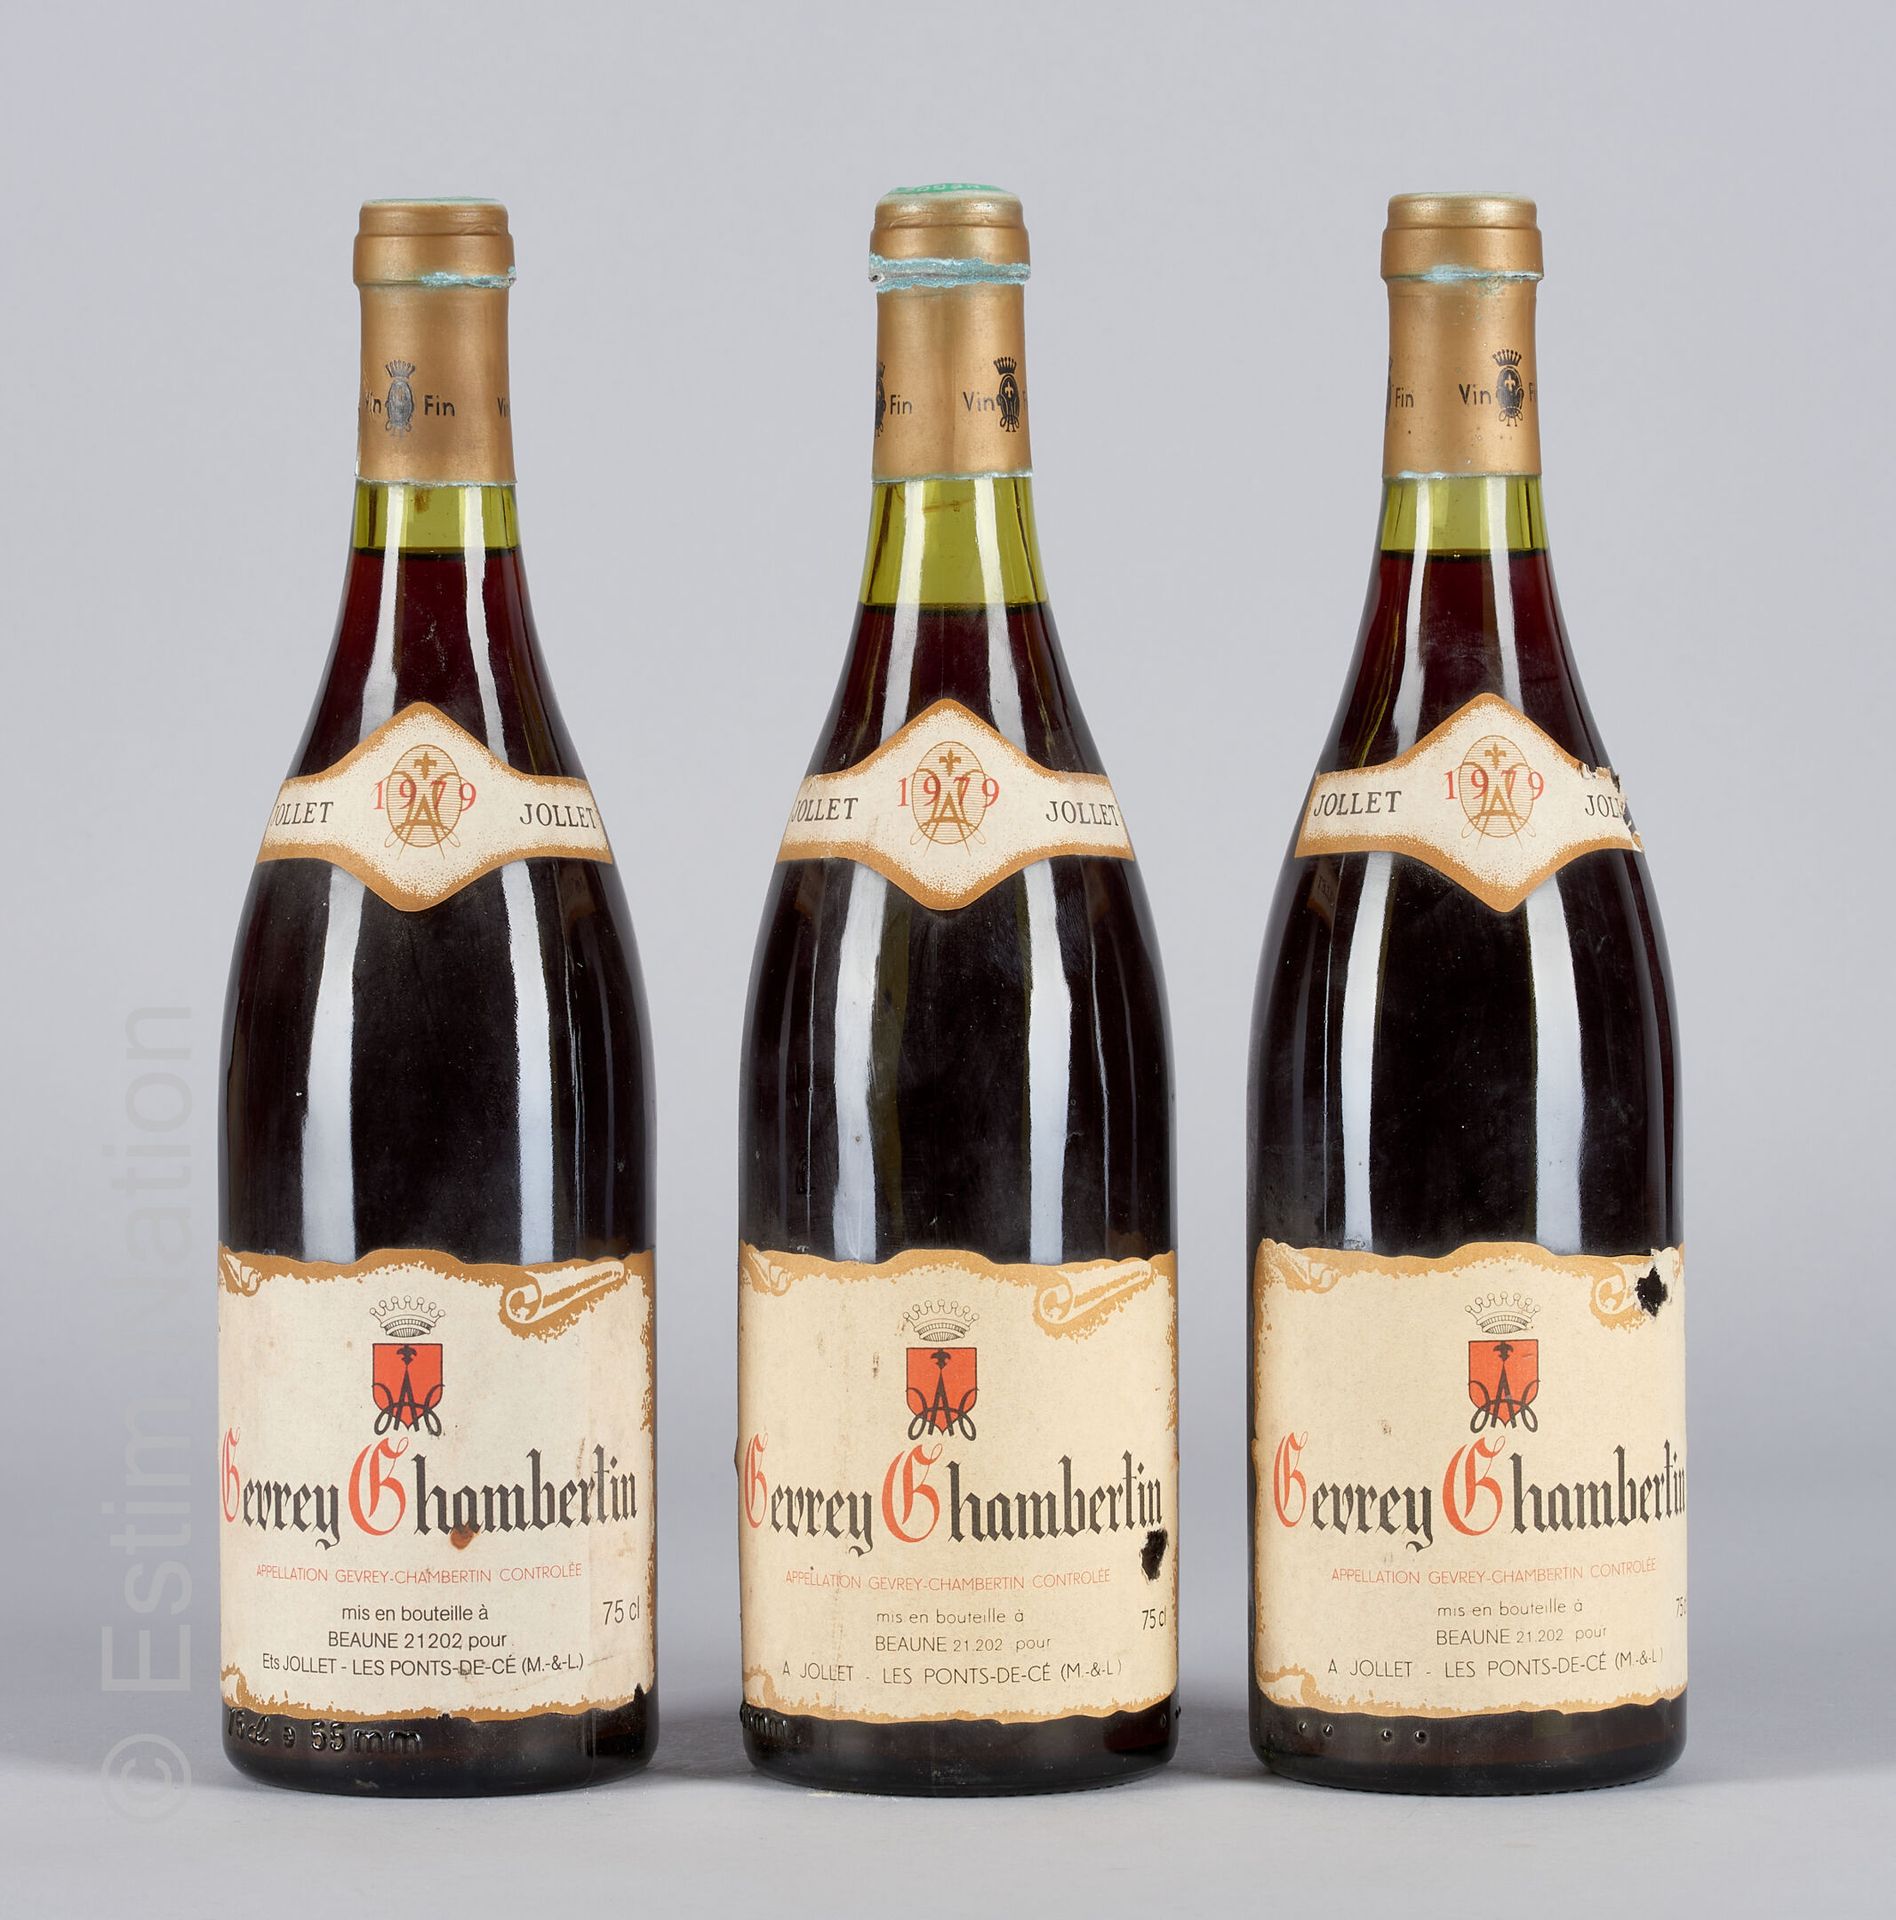 BOURGOGNE 3 bouteilles de Gevrey Chambertin 1979 Les ponts de Ce Mau

(N. 1 entr&hellip;